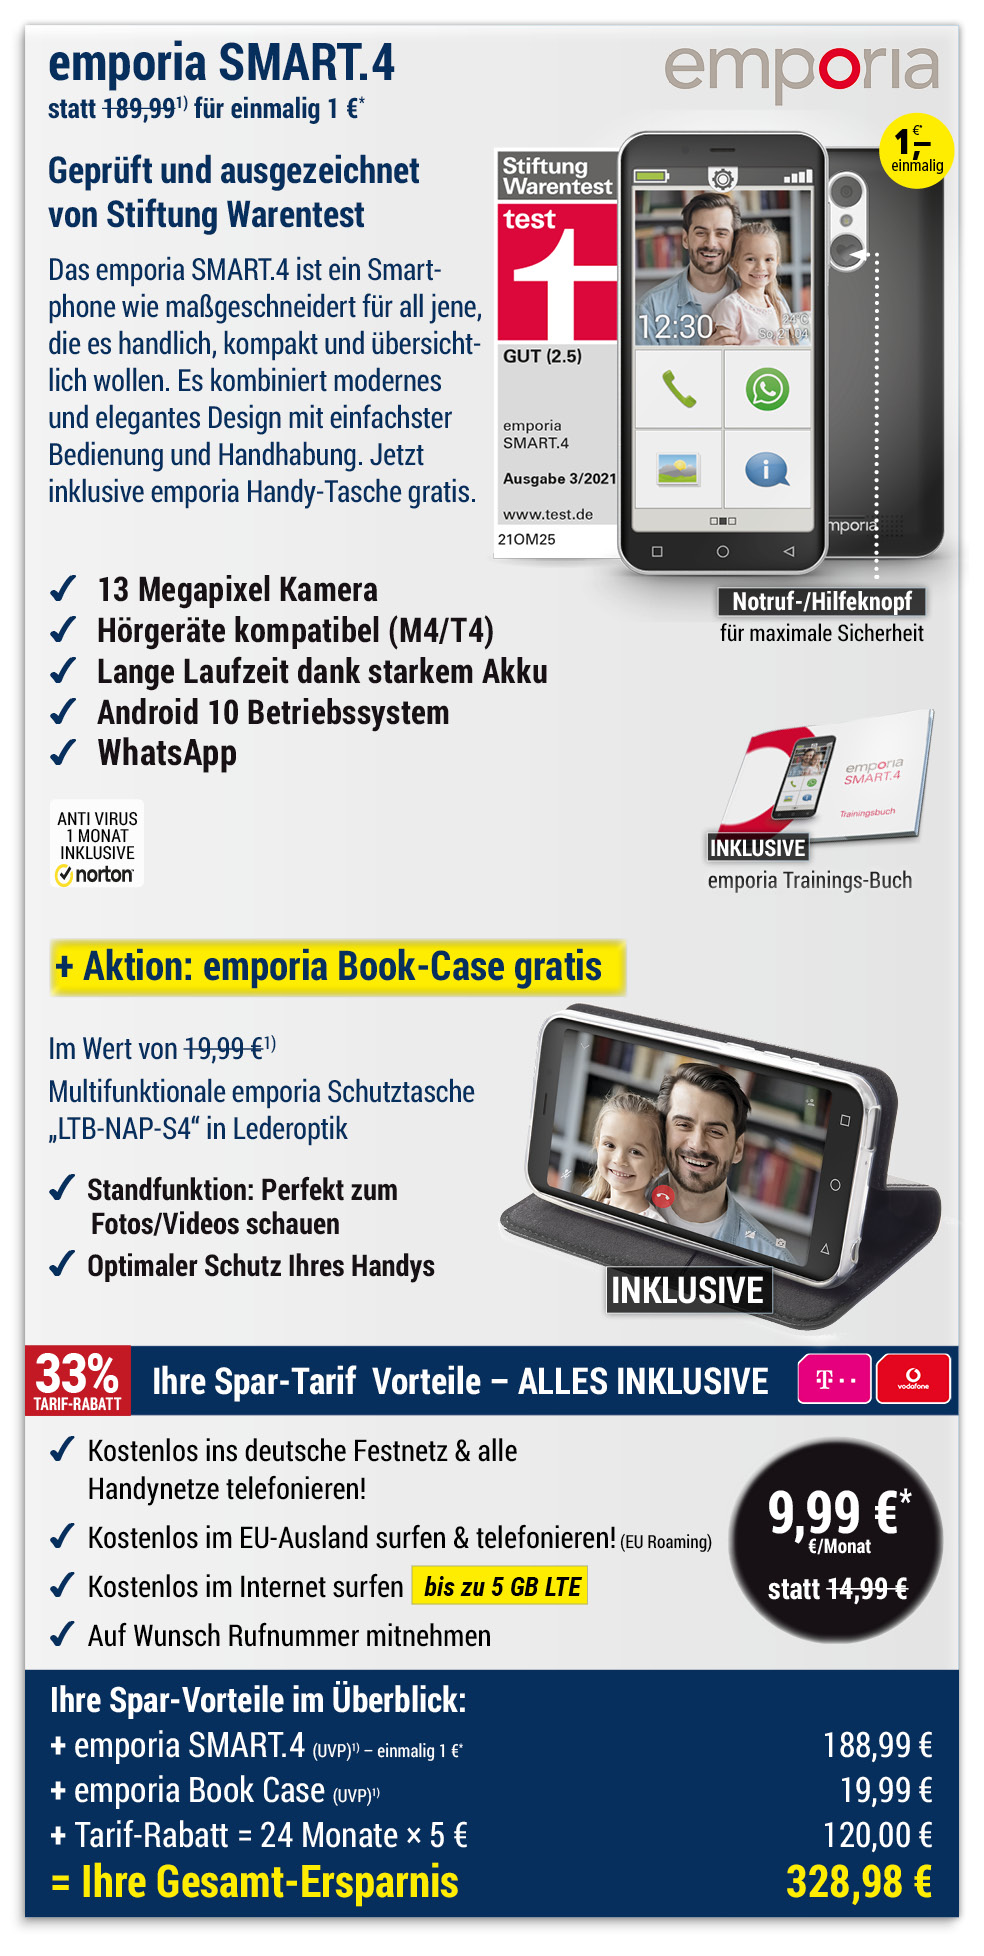 Für nur 1 €*: emporia SMART.4 + Book Case + mit ALL NET FLAT für 9,99 €/Monat